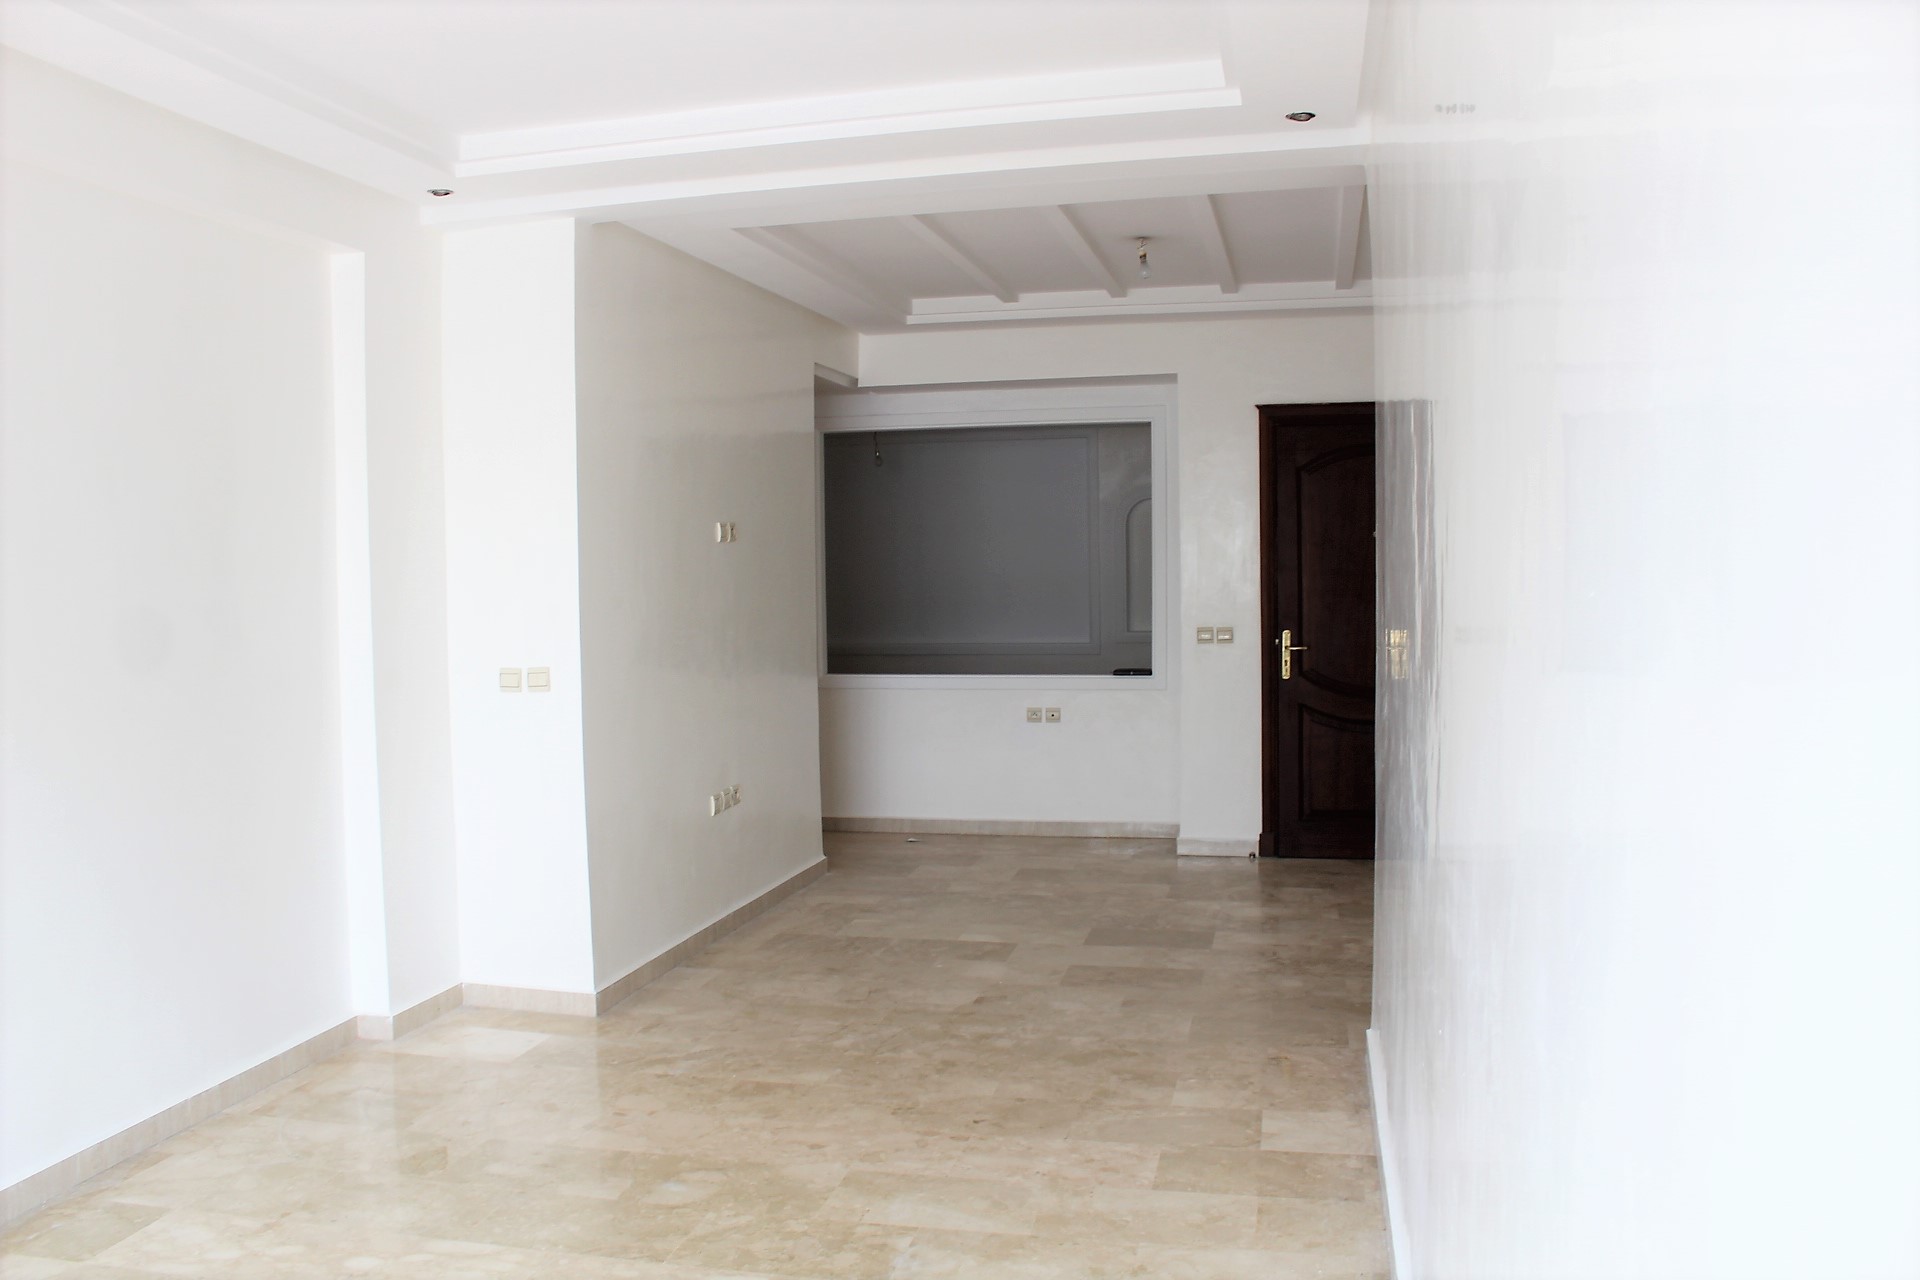 Maroc, Casablanca Sud, Jnane Californie à louer appartement type F3 meublé en étage élevé de 100 m²